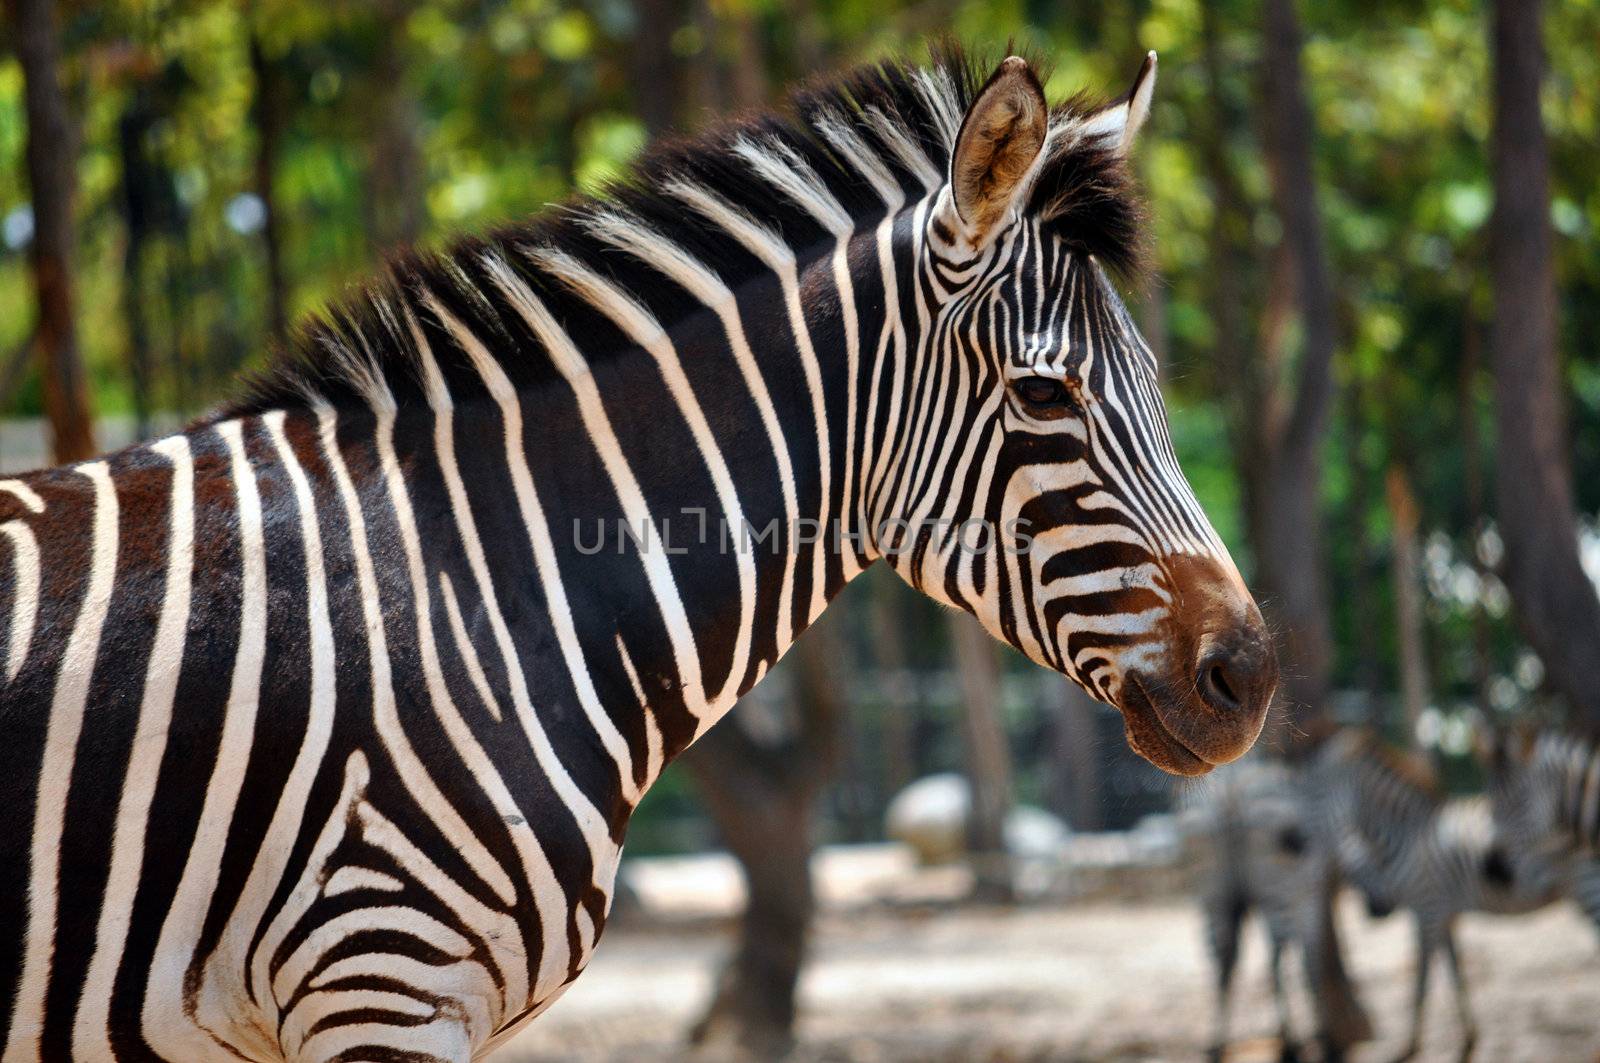 Zebra by MaZiKab